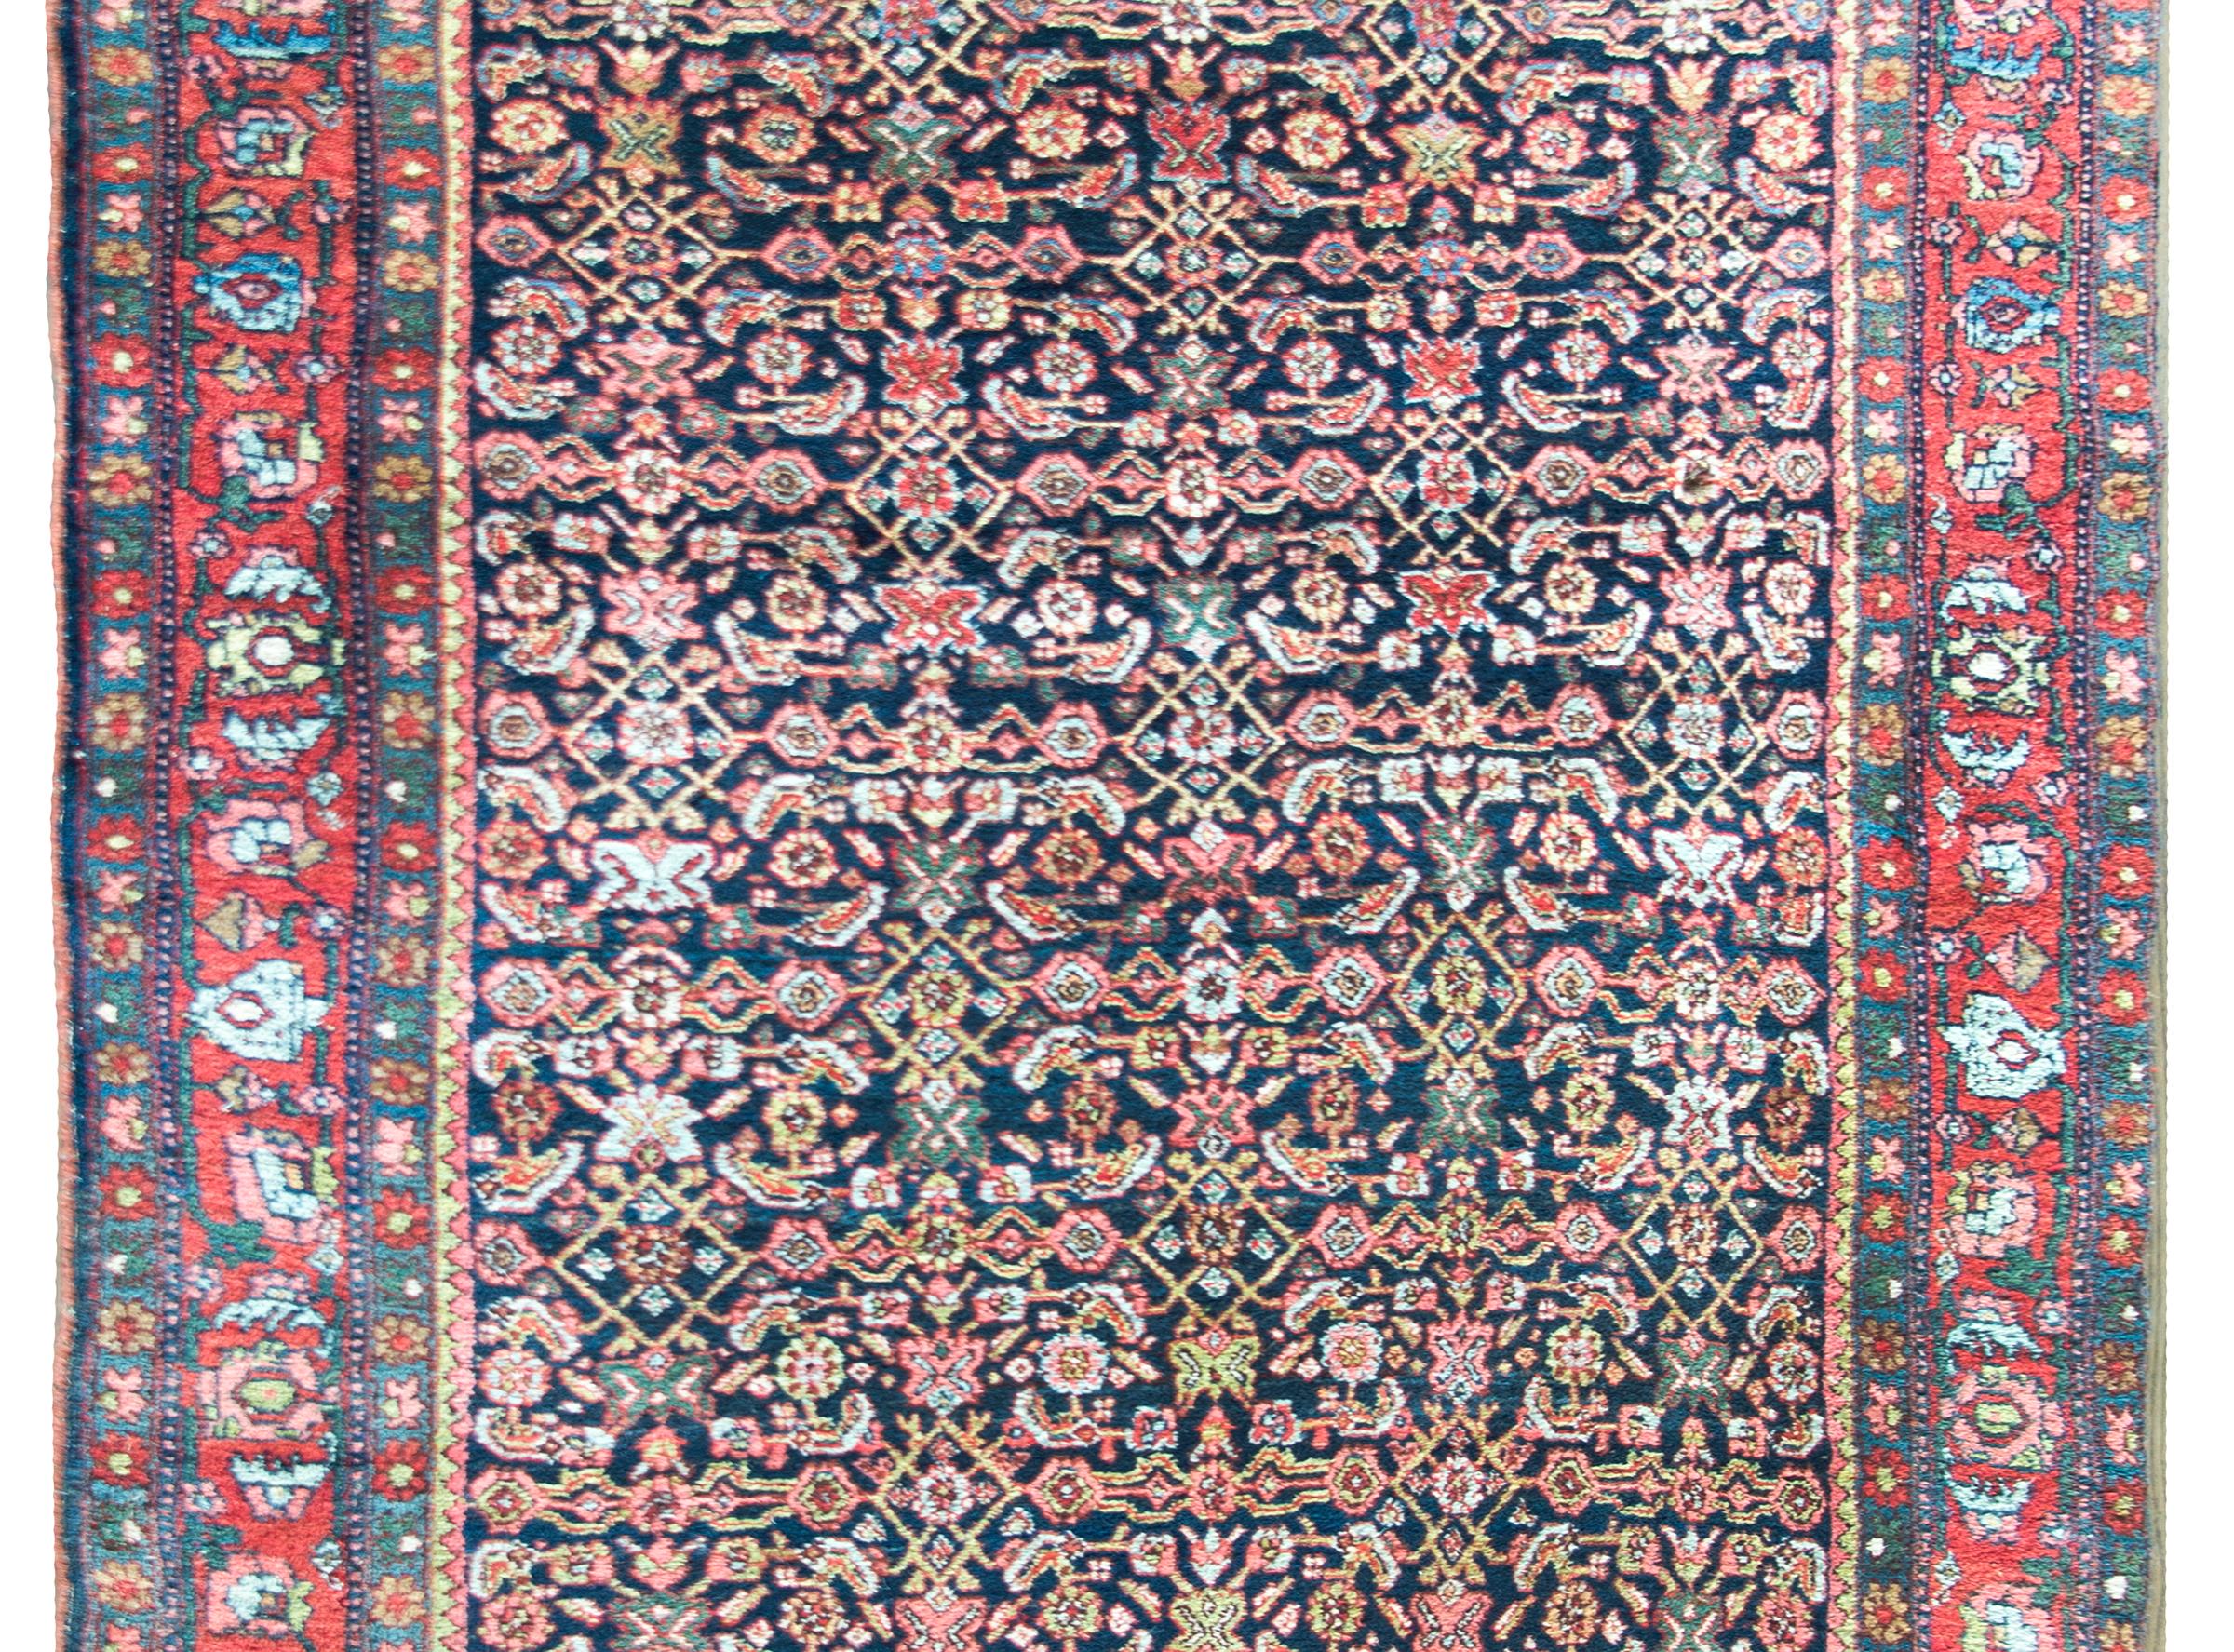 Remarquable tapis persan du début du 20e siècle à motif floral en treillis tissé d'une myriade de fleurs stylisées, de feuilles et de vignes enroulées, entouré d'une incroyable bordure complexe avec une large bande centrale à motif floral flanquée